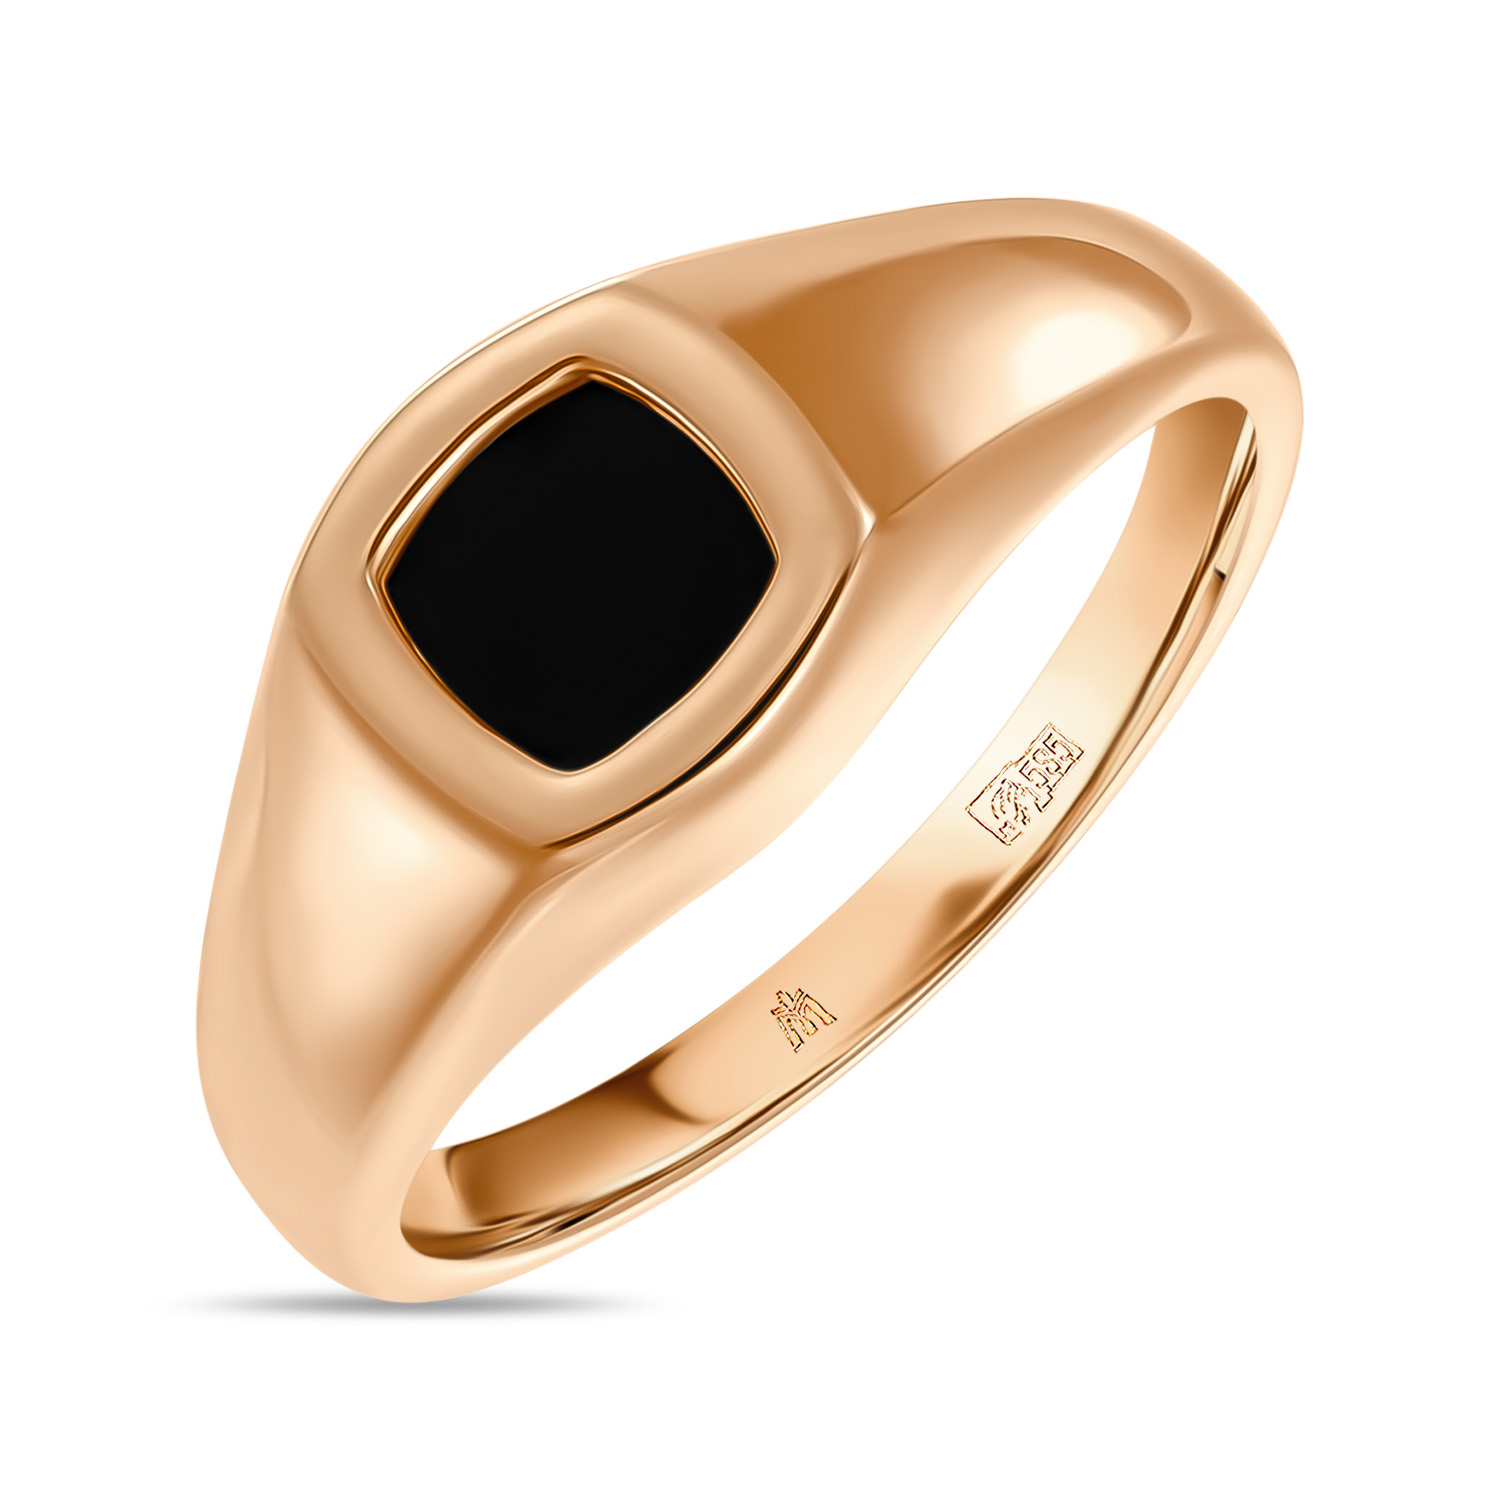 мужское кольцо мюз мужское кольцо с ониксом и фианитами Мужское Кольцо МЮЗ Мужское Кольцо с ониксом